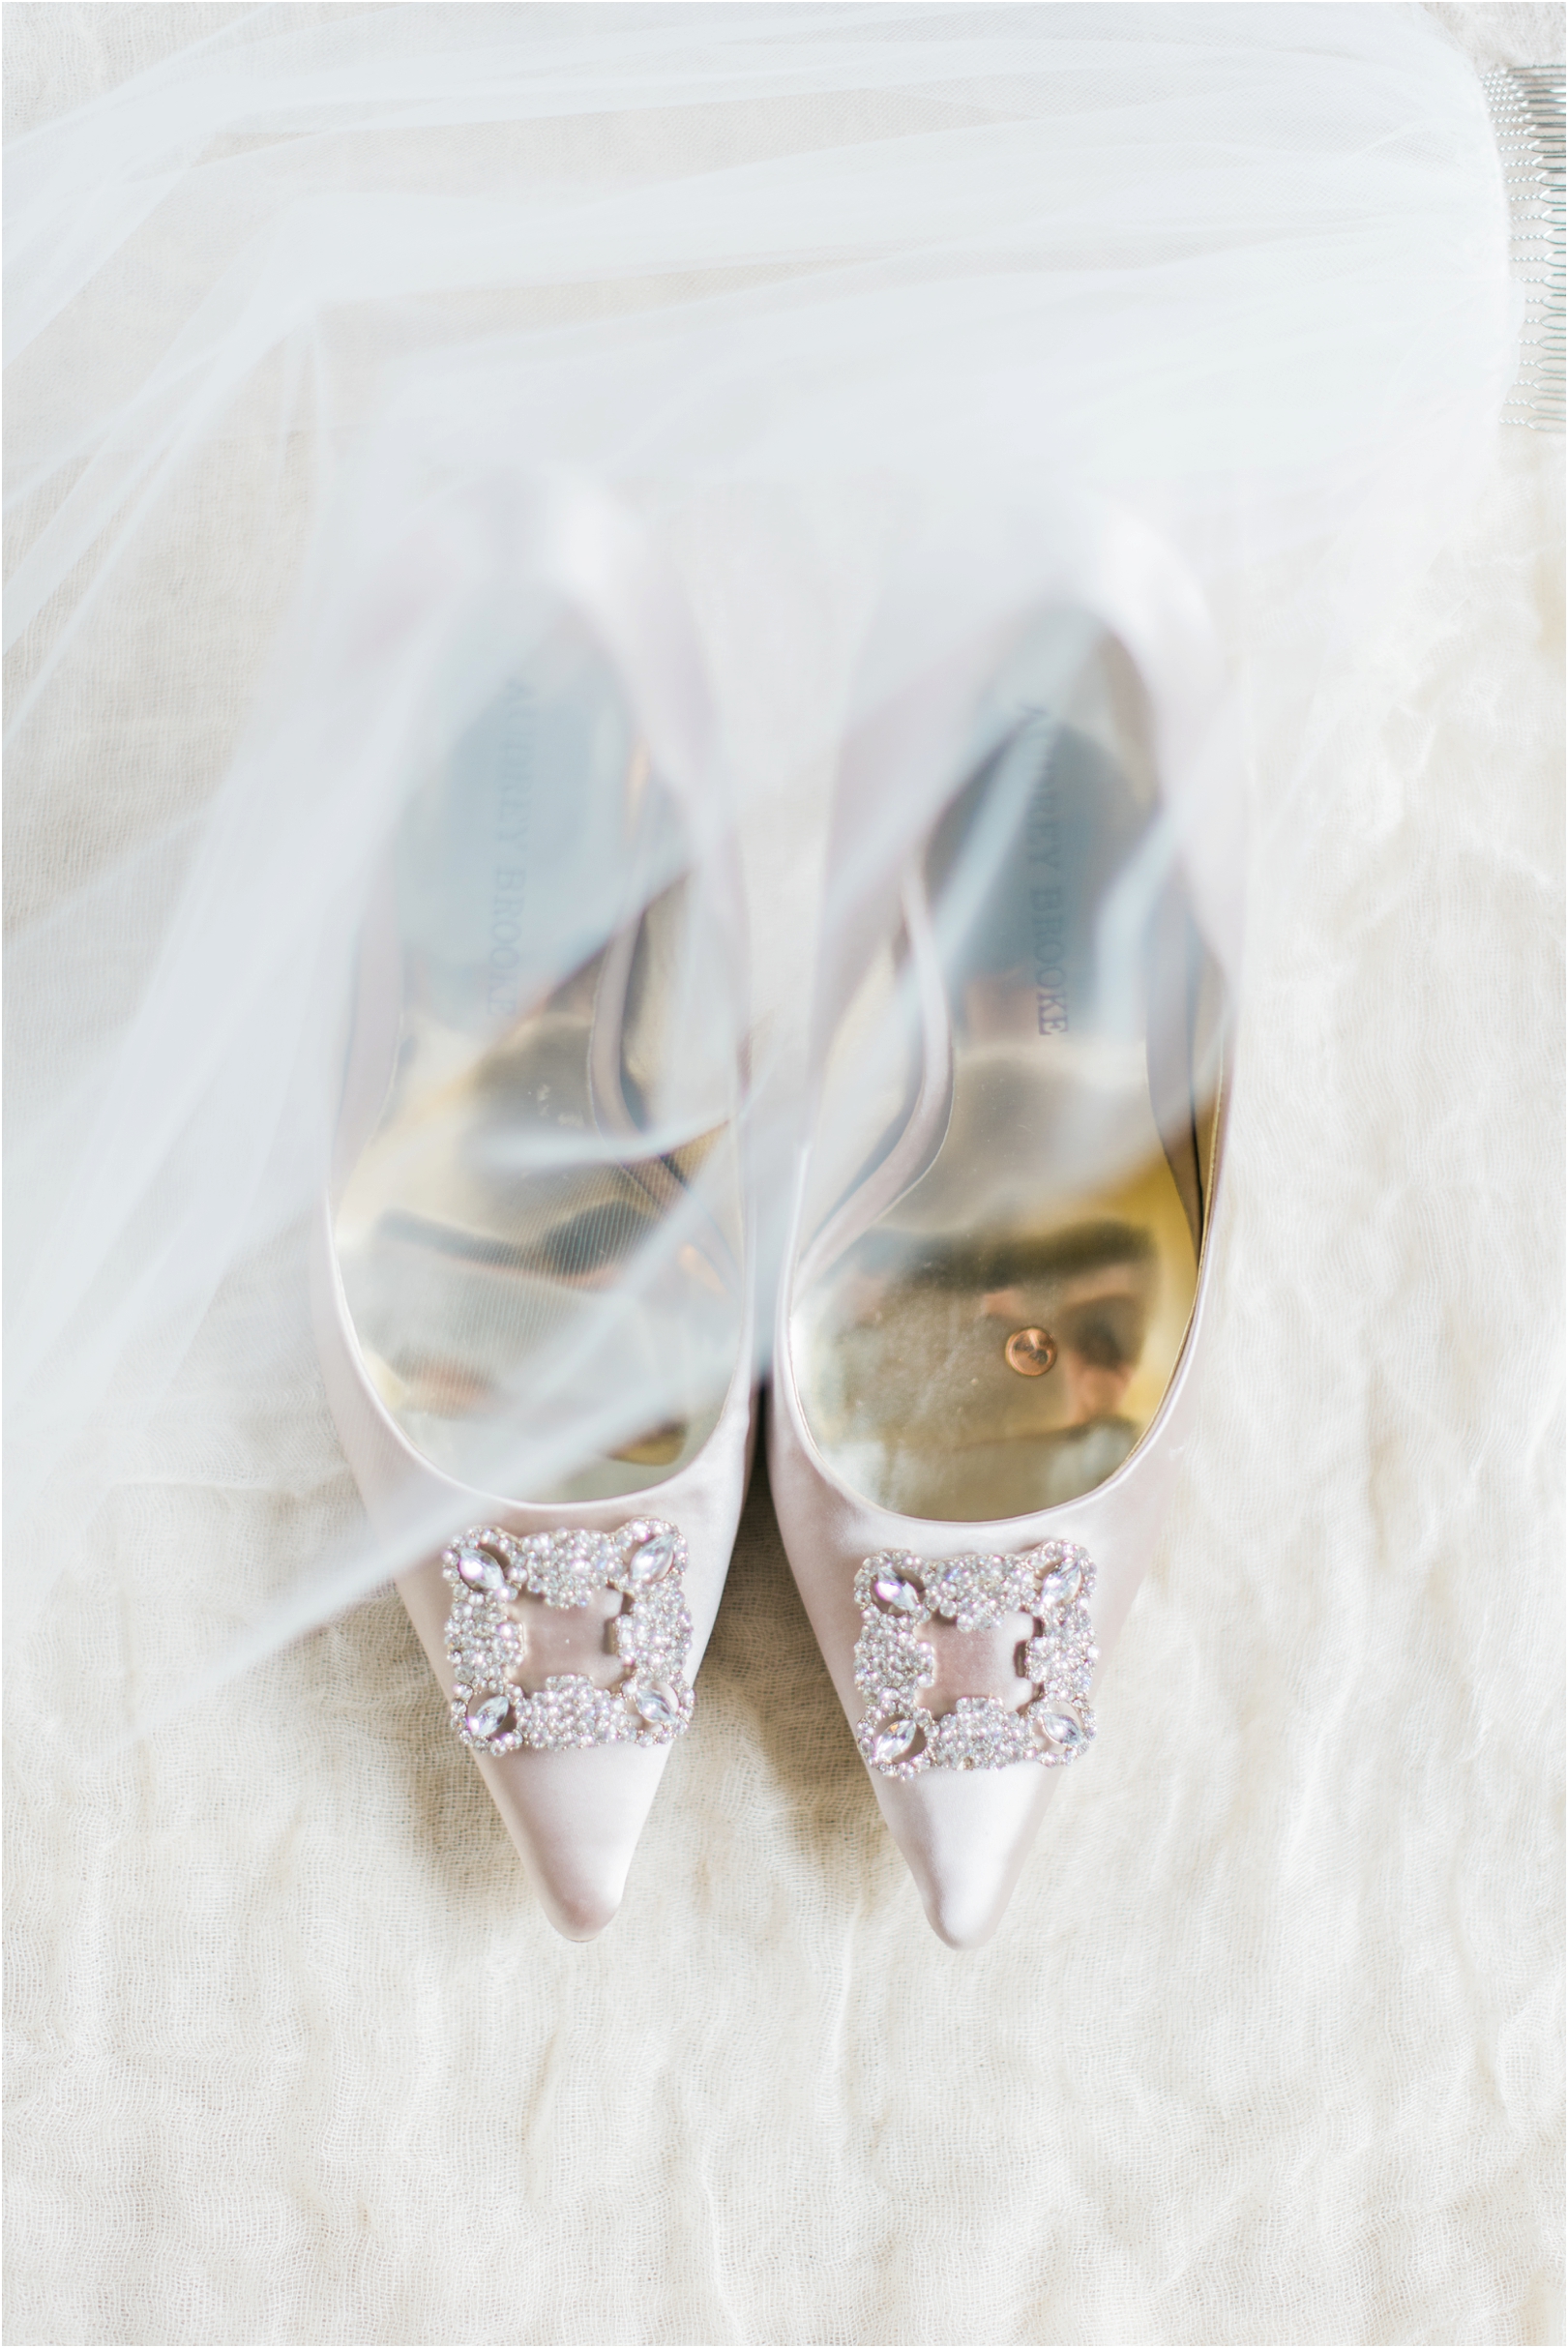 Audrey-brooke-wedding-shoes-image